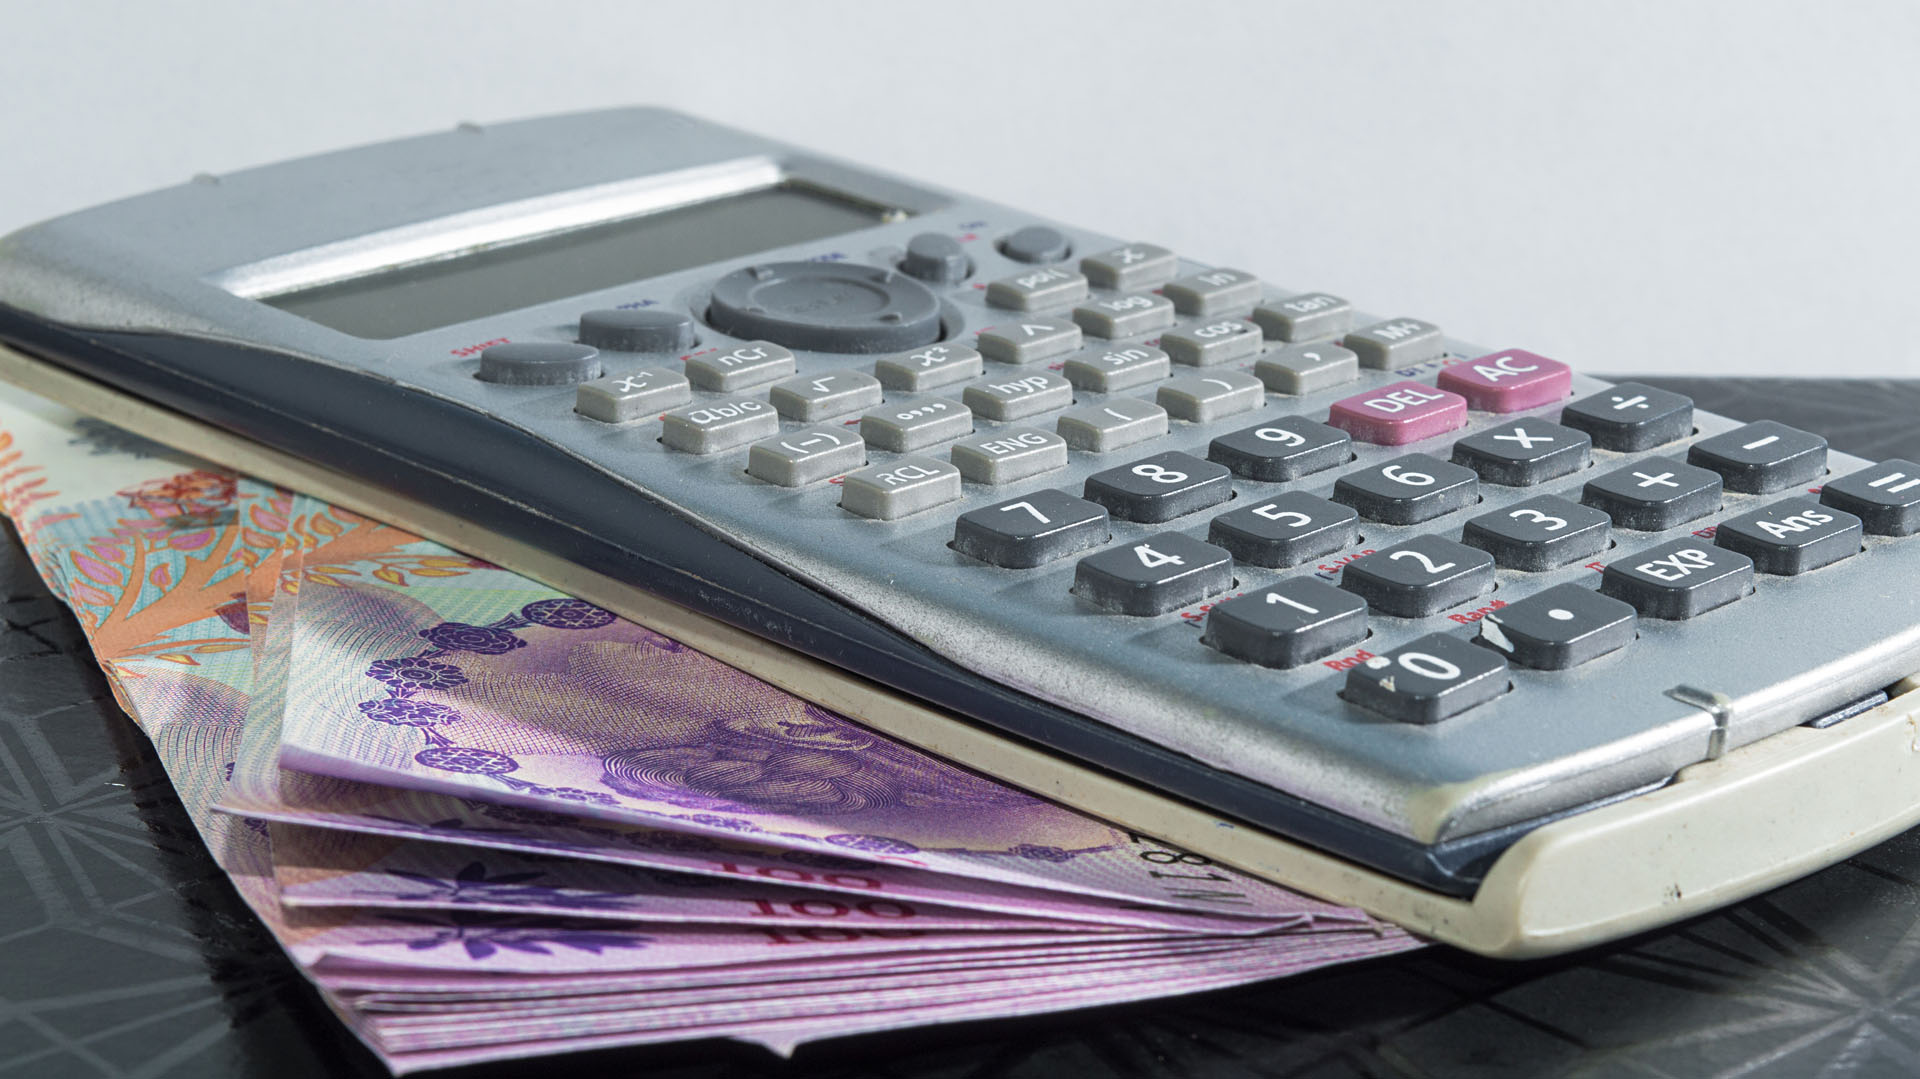 Objeto de oficina, una calculadora un poco deteriorada por el uso, con unos billetes de cien pesos argentinos